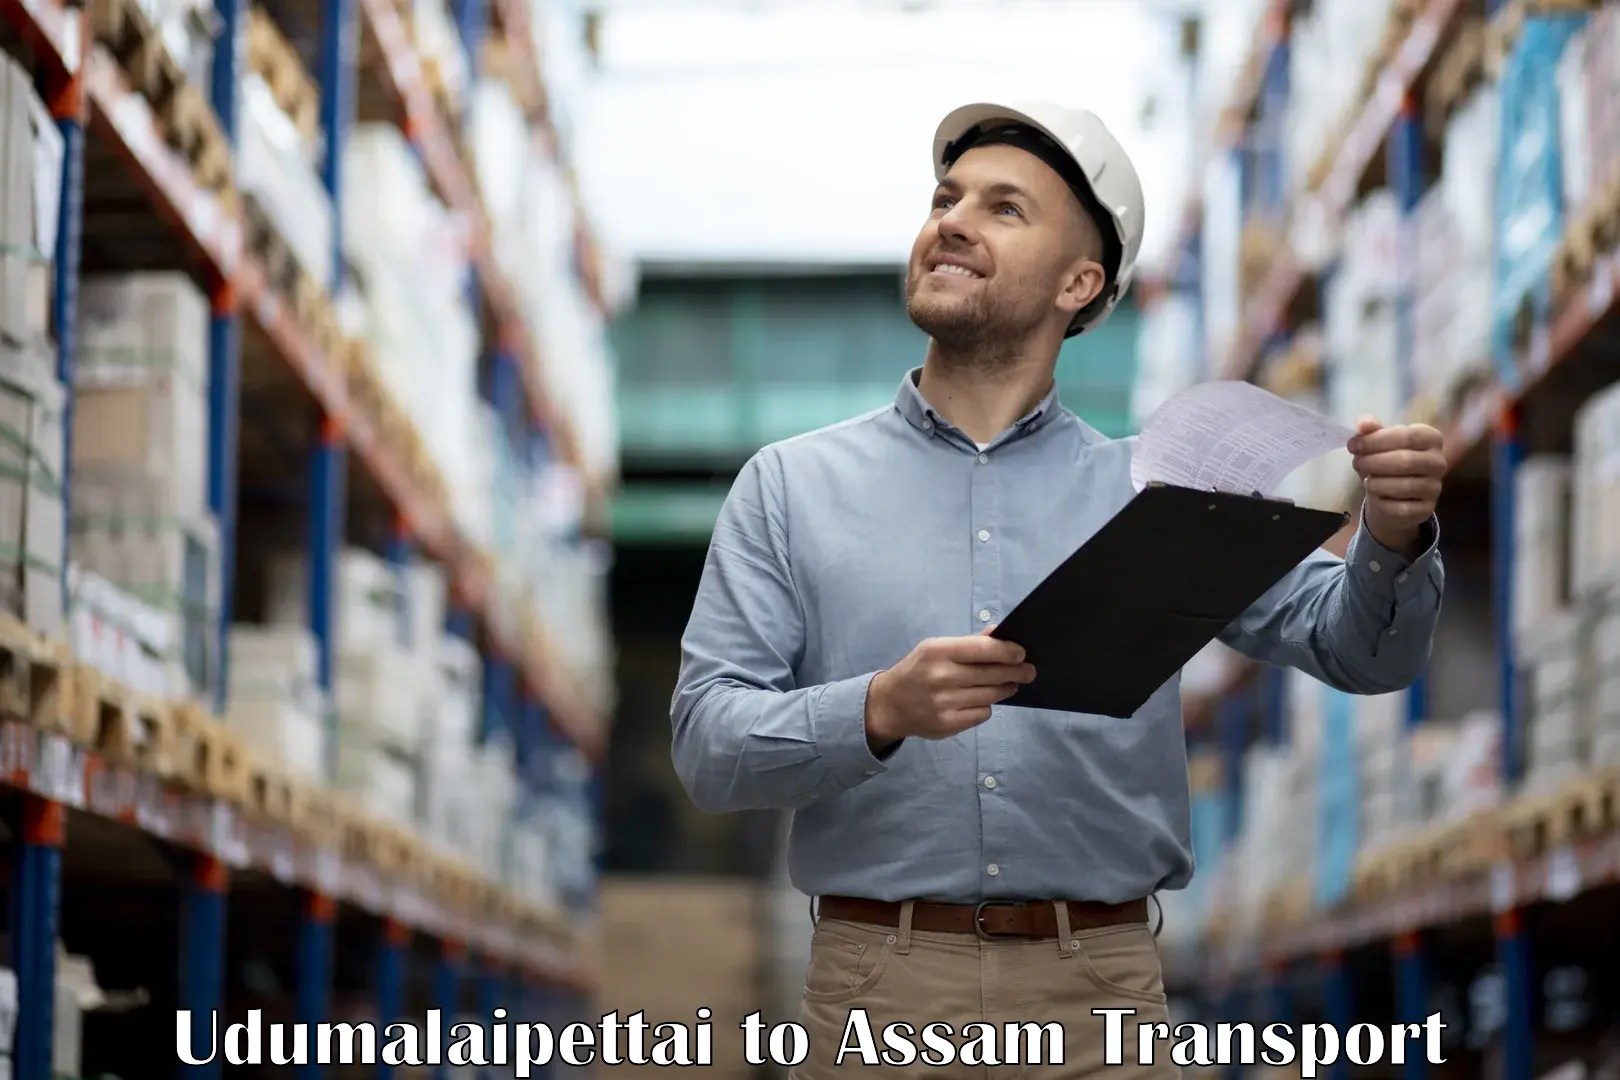 Truck transport companies in India Udumalaipettai to Nalbari